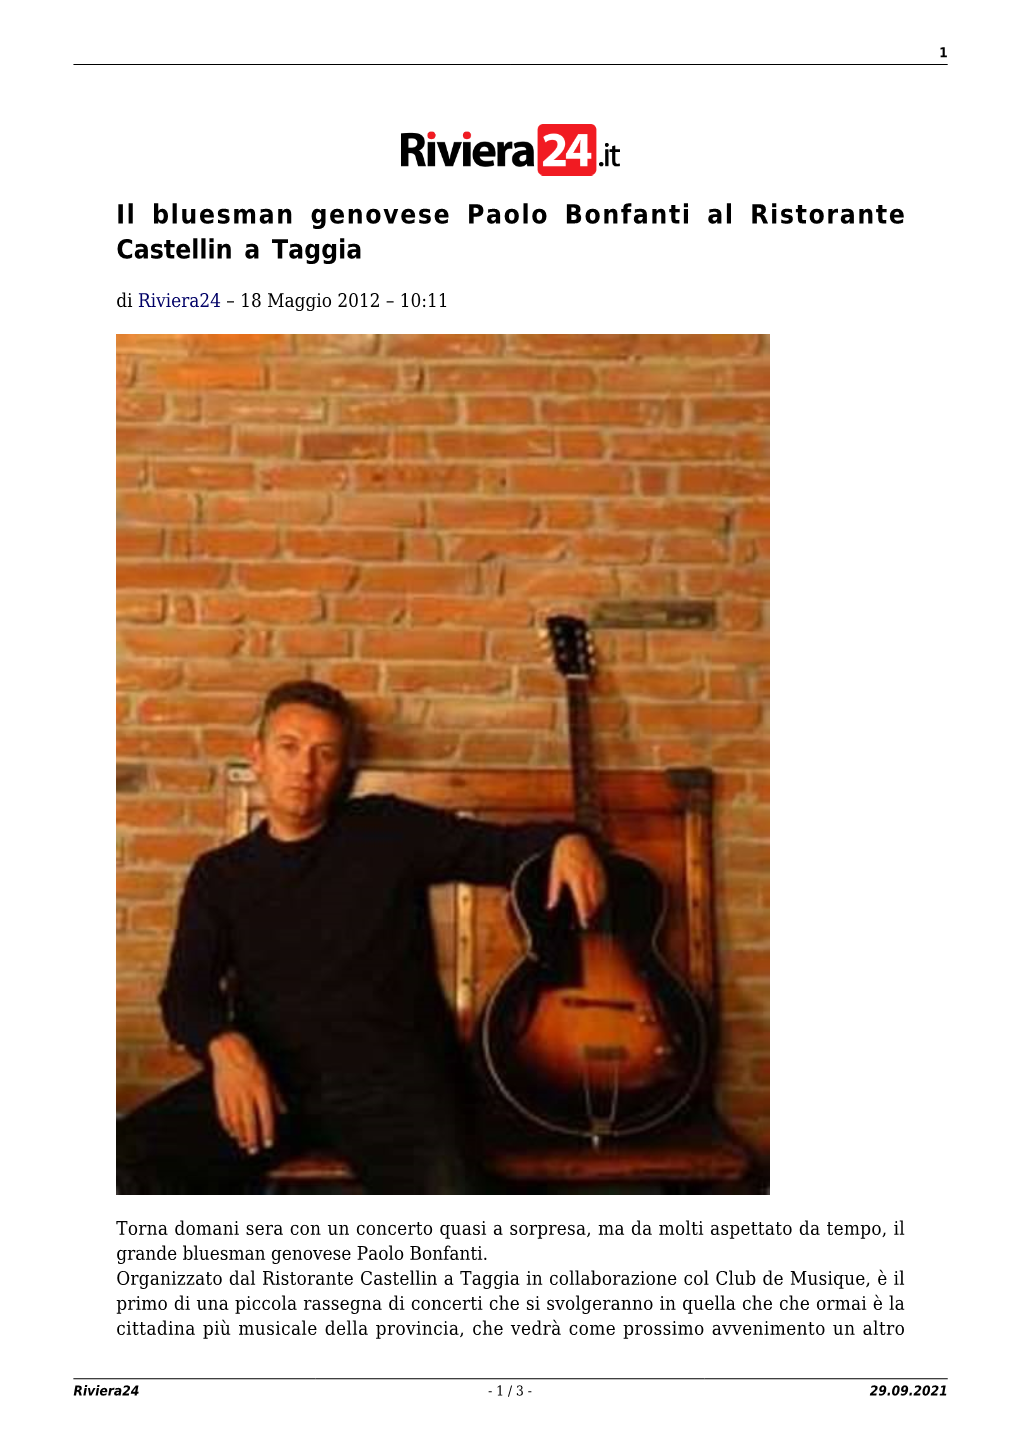 Il Bluesman Genovese Paolo Bonfanti Al Ristorante Castellin a Taggia